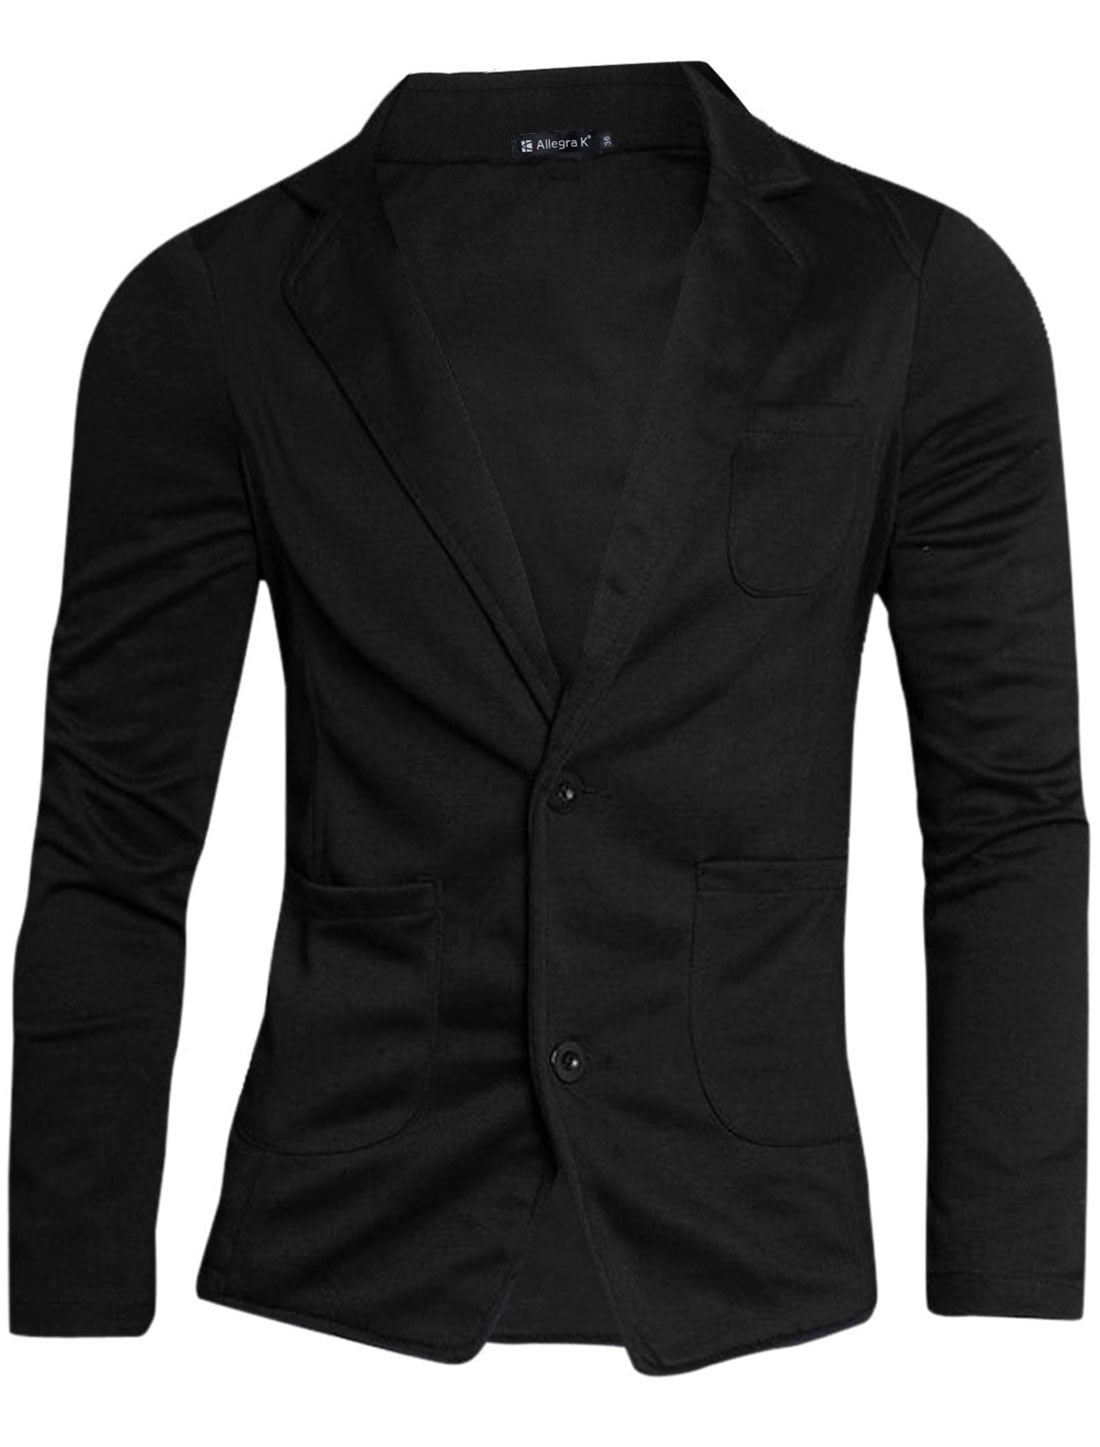 Men's Notched Two-Button Placket Slim Fit Blazer Black (Size M / 38 ...